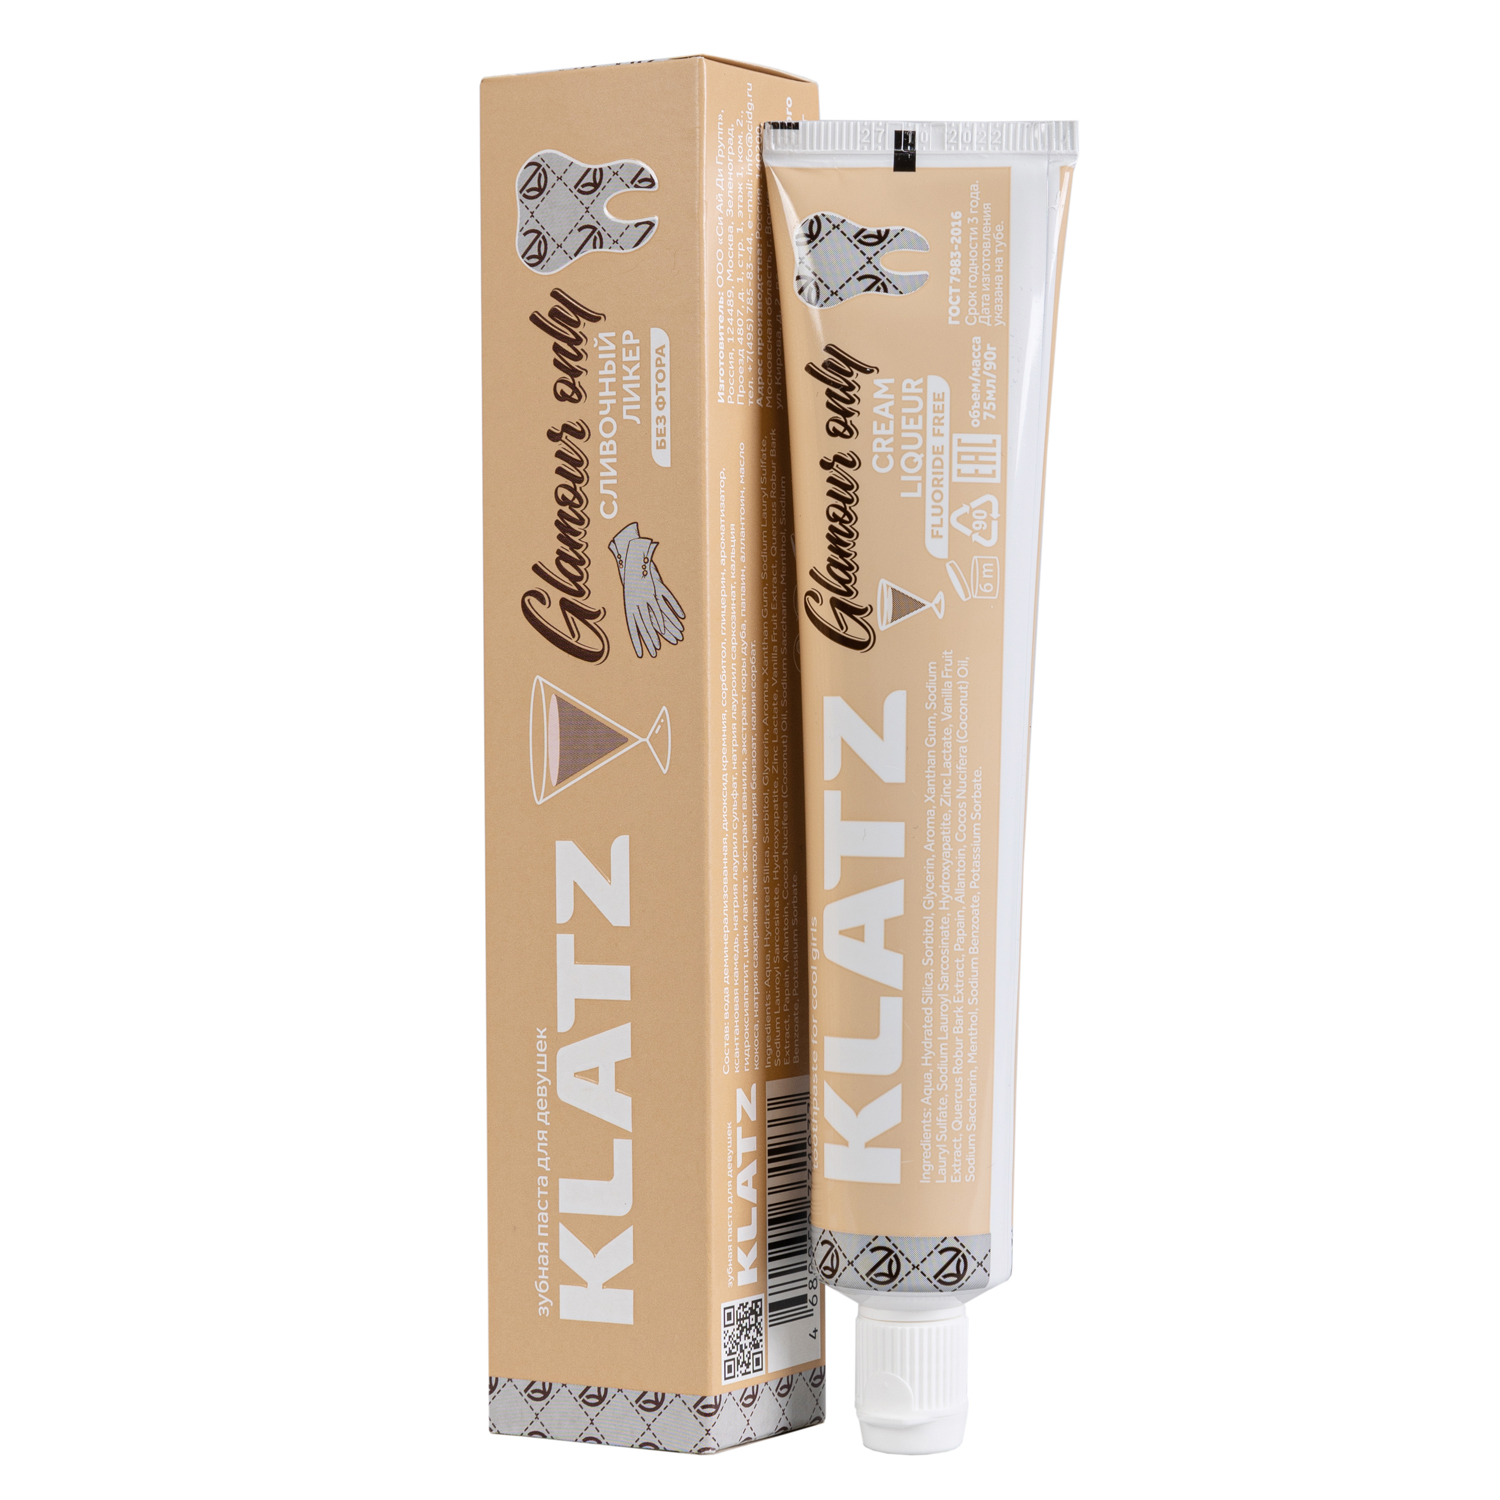 Klatz Зубная паста для девушек Сливочный ликер, 75 мл (Klatz, Glamour Only) набор для чистки зубов klatz glamour only 75 мл 3 шт